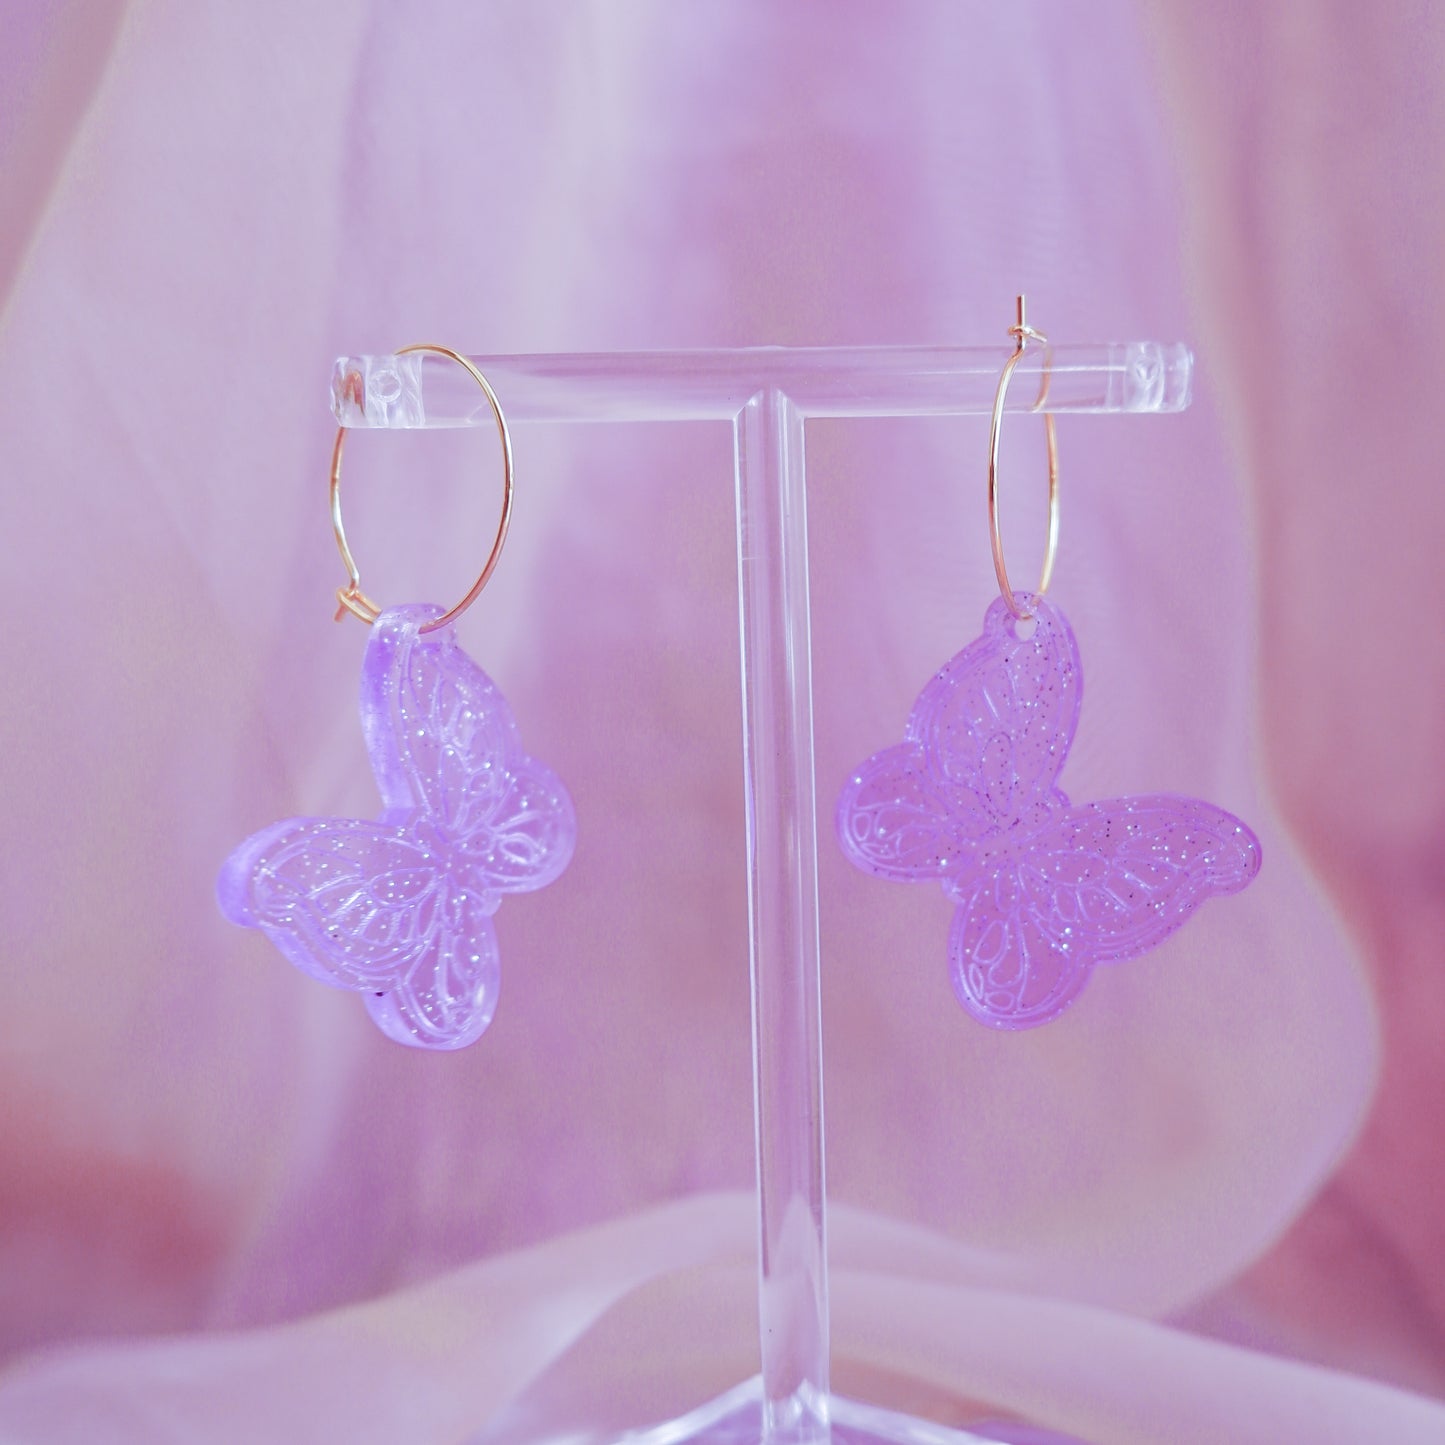 speak now butterflies - taylor swift earrings